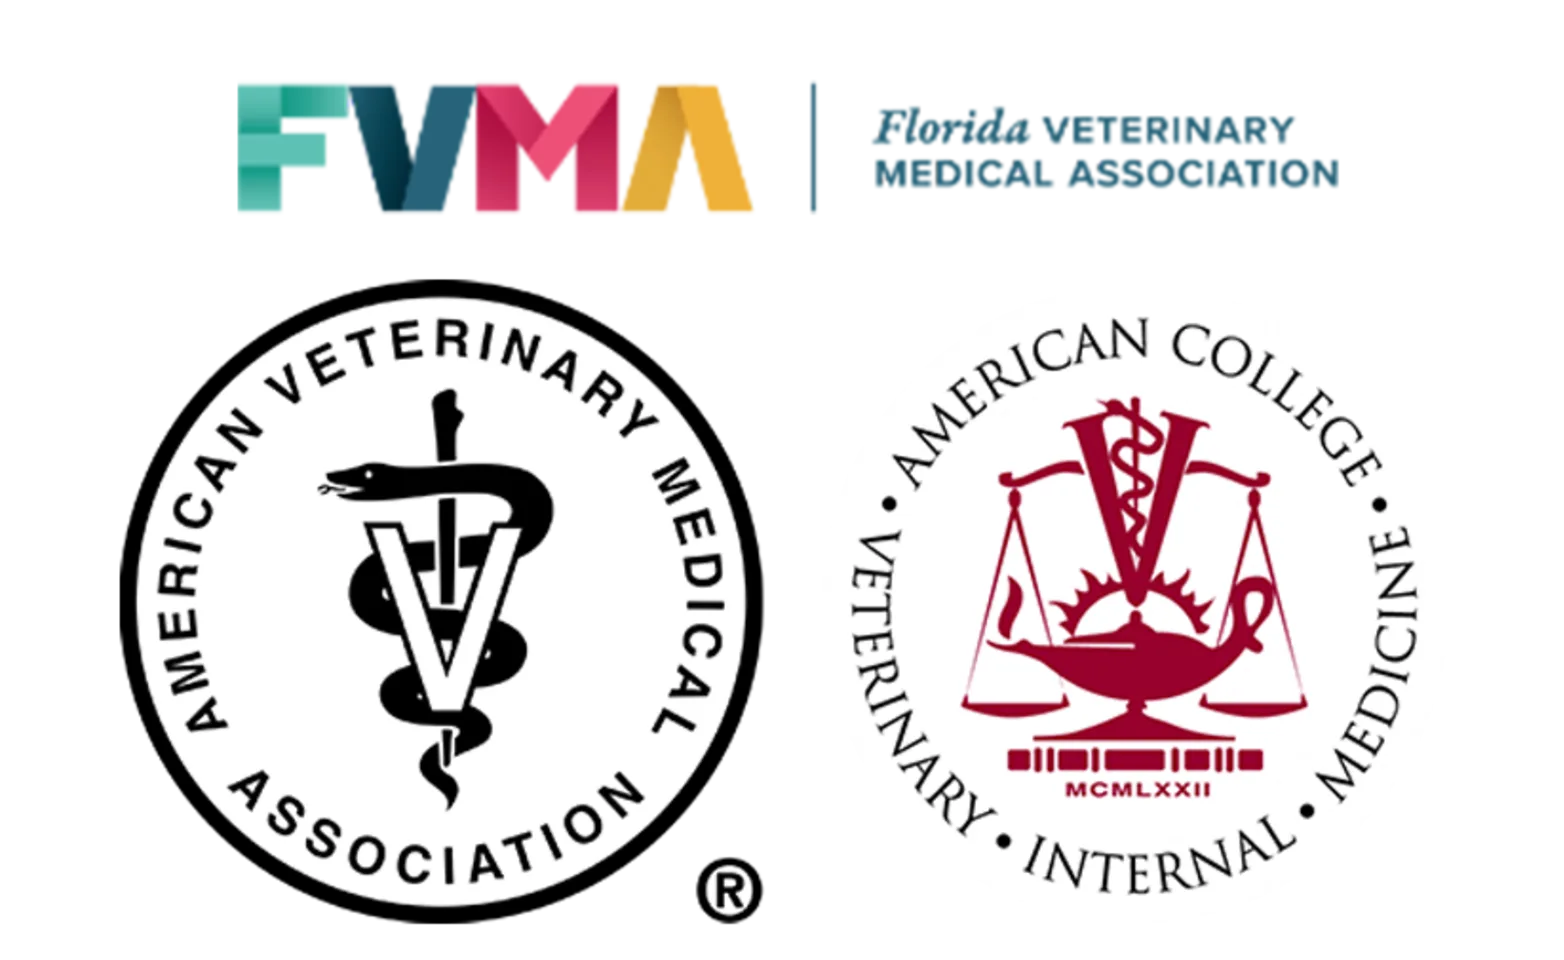 FVMA, ACVIM, and AVMA memberships